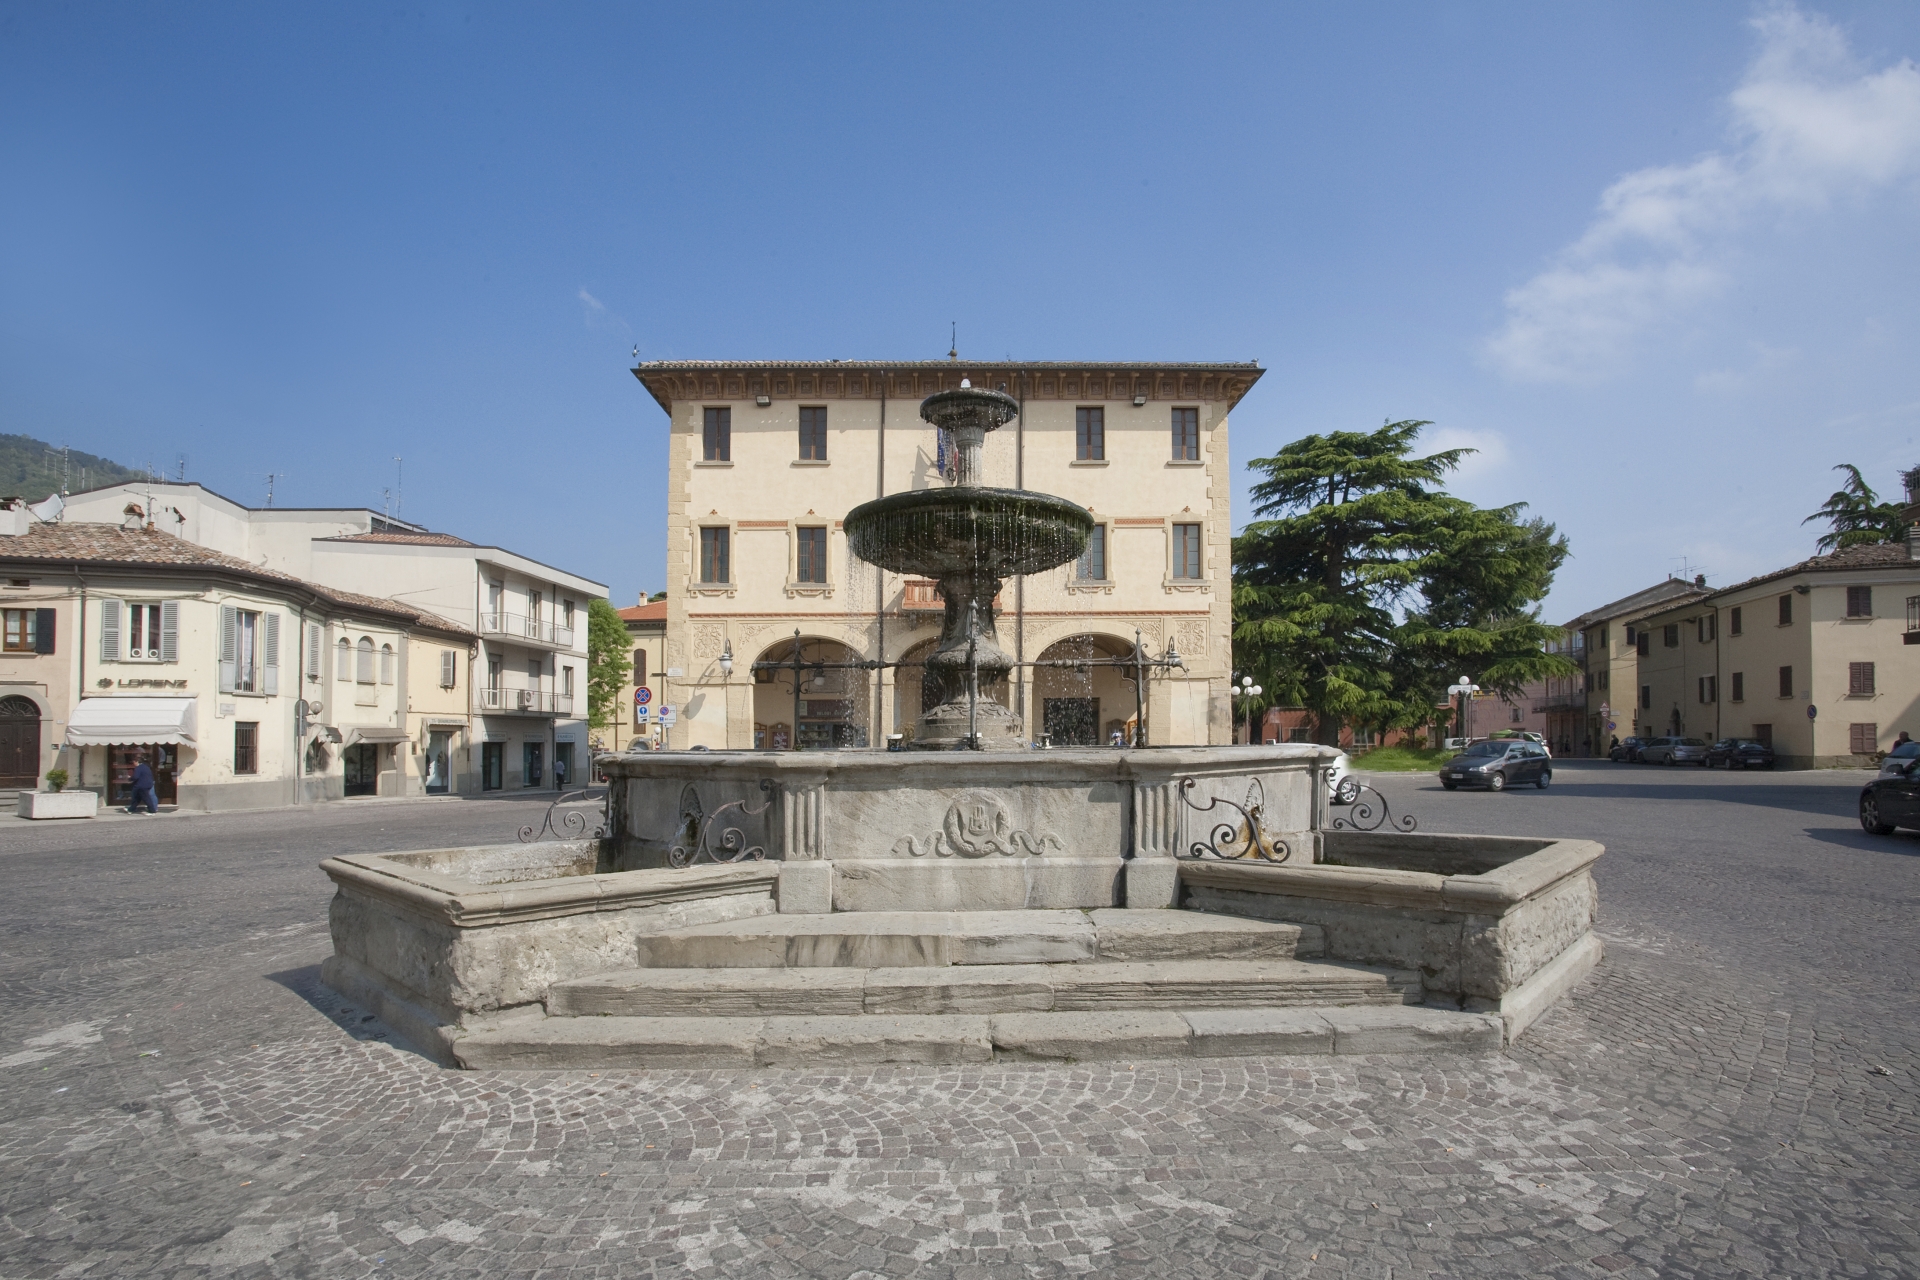 Novafeltria, municipio e fontana photo by Paritani